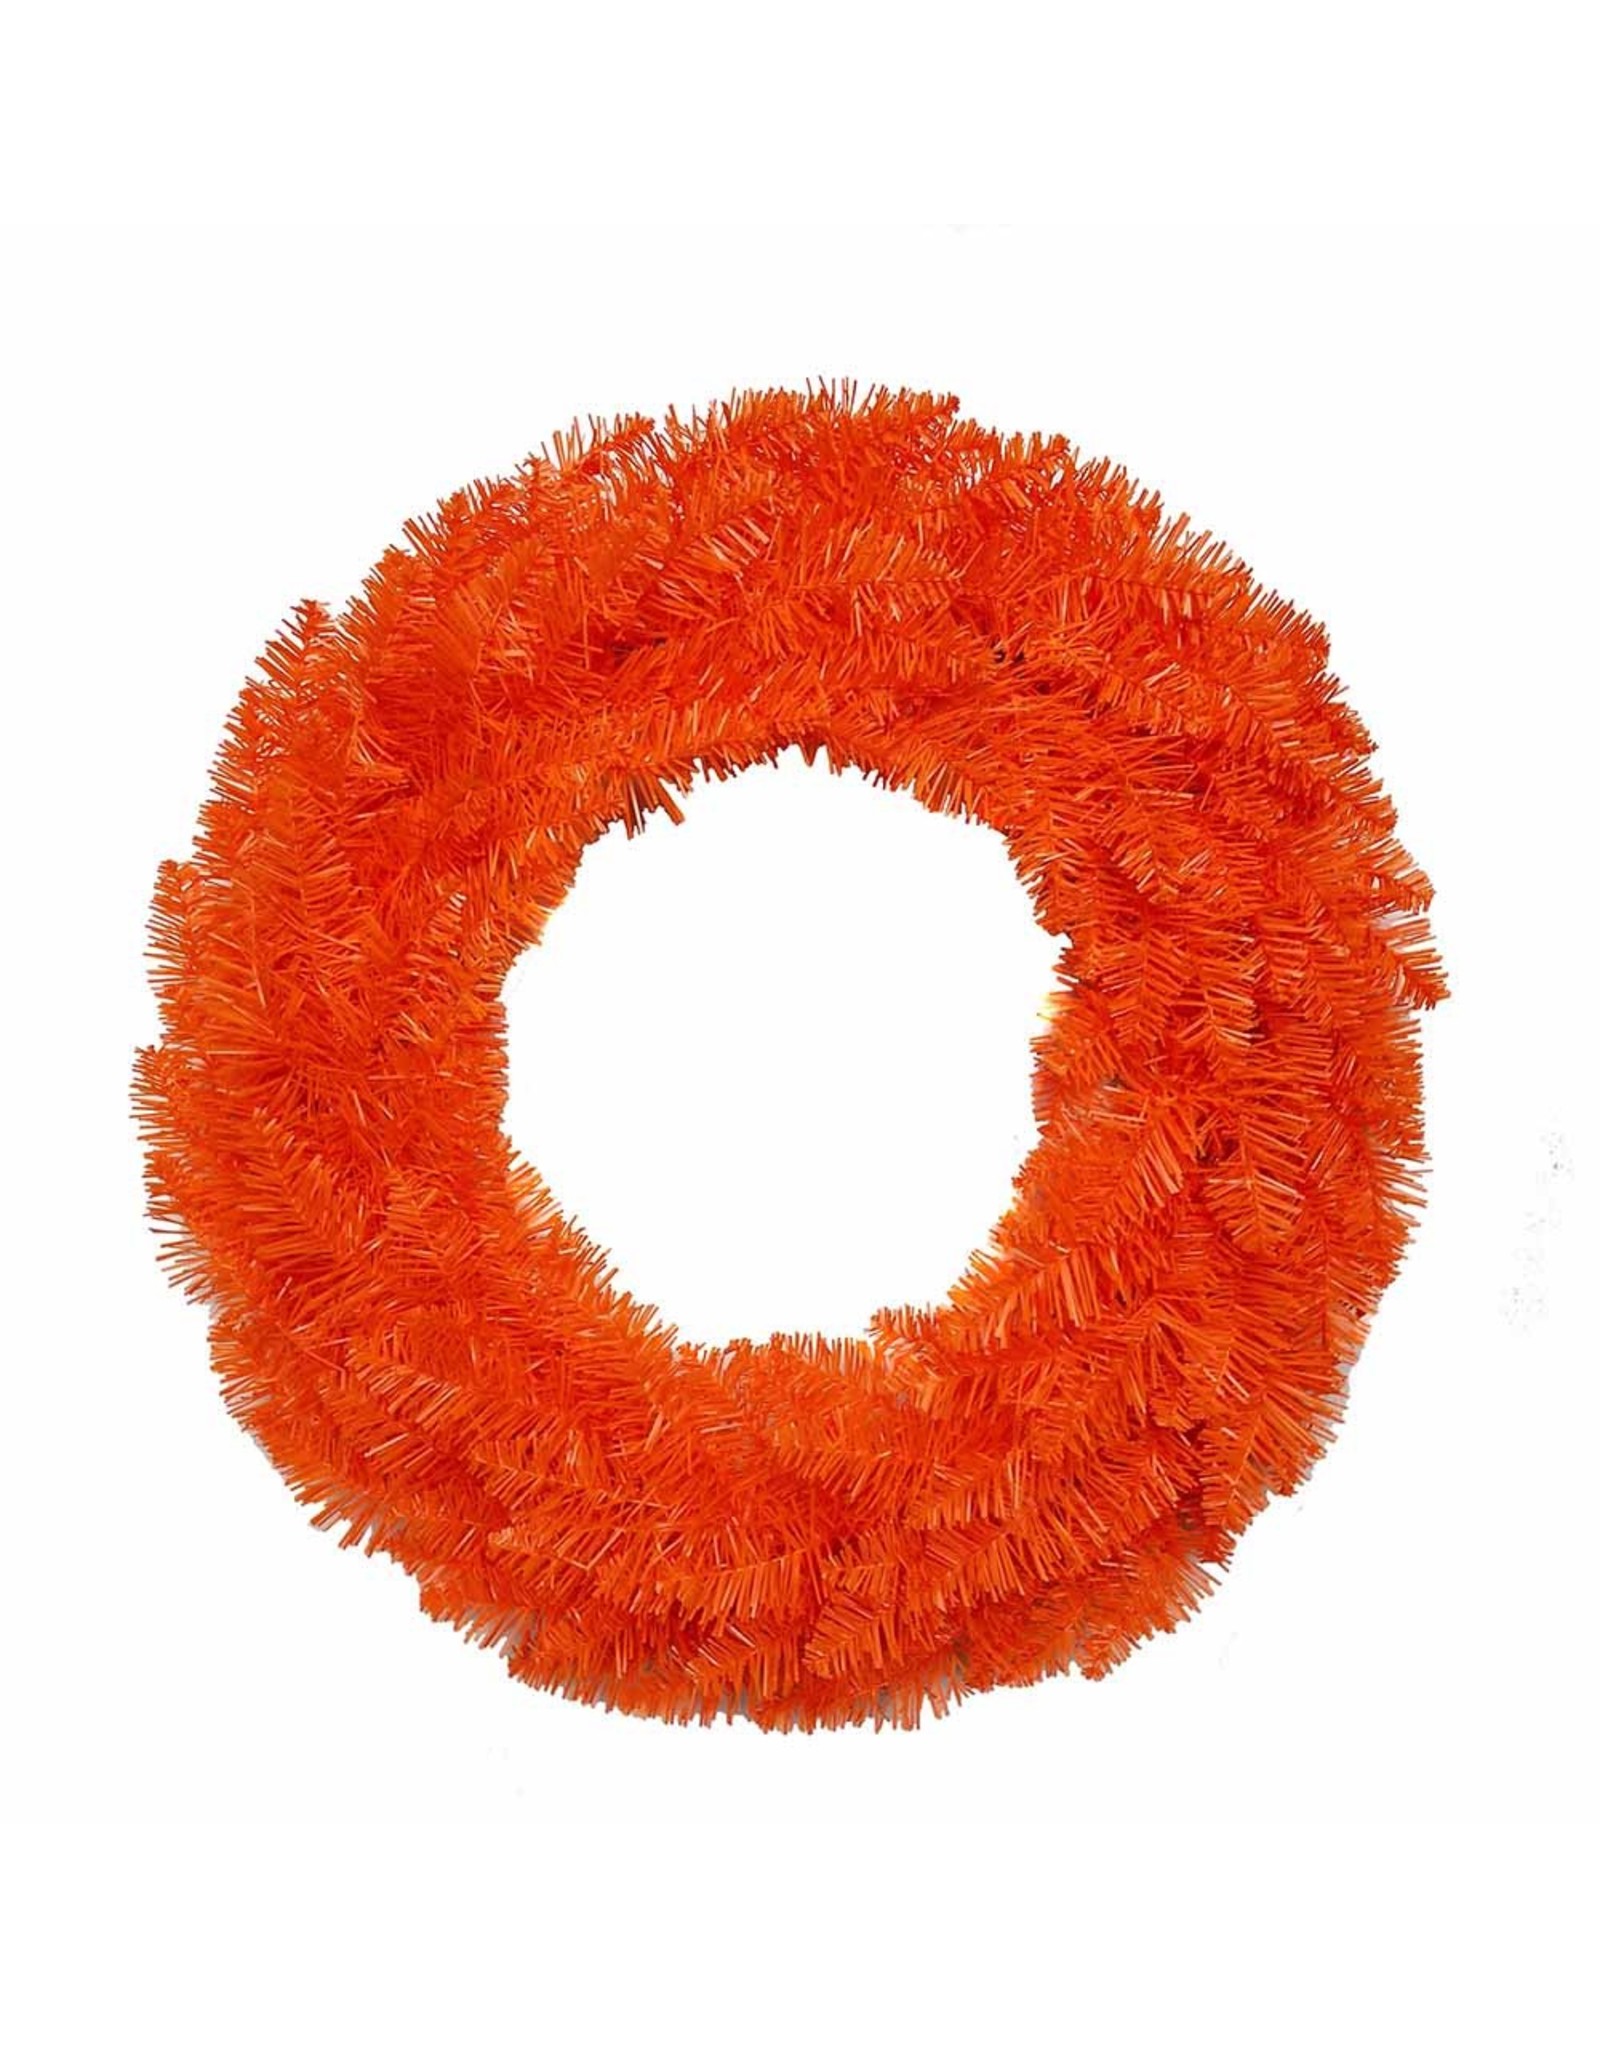 Kurt Adler Un-Lit Orange Wreath 24 Inch Halloween Decor